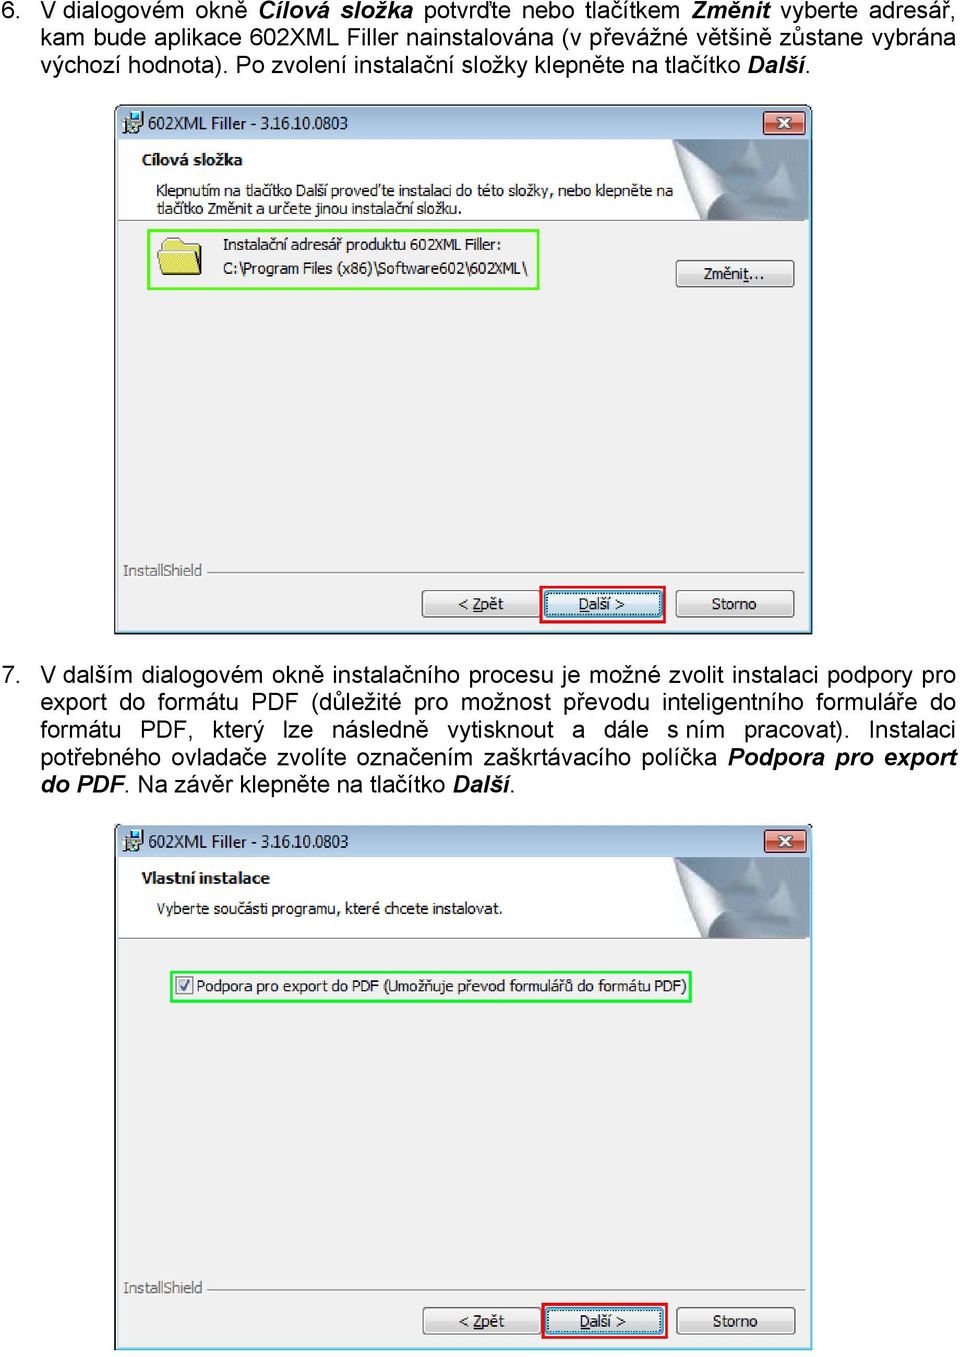 V dalším dialogovém okně instalačního procesu je možné zvolit instalaci podpory pro export do formátu PDF (důležité pro možnost převodu inteligentního